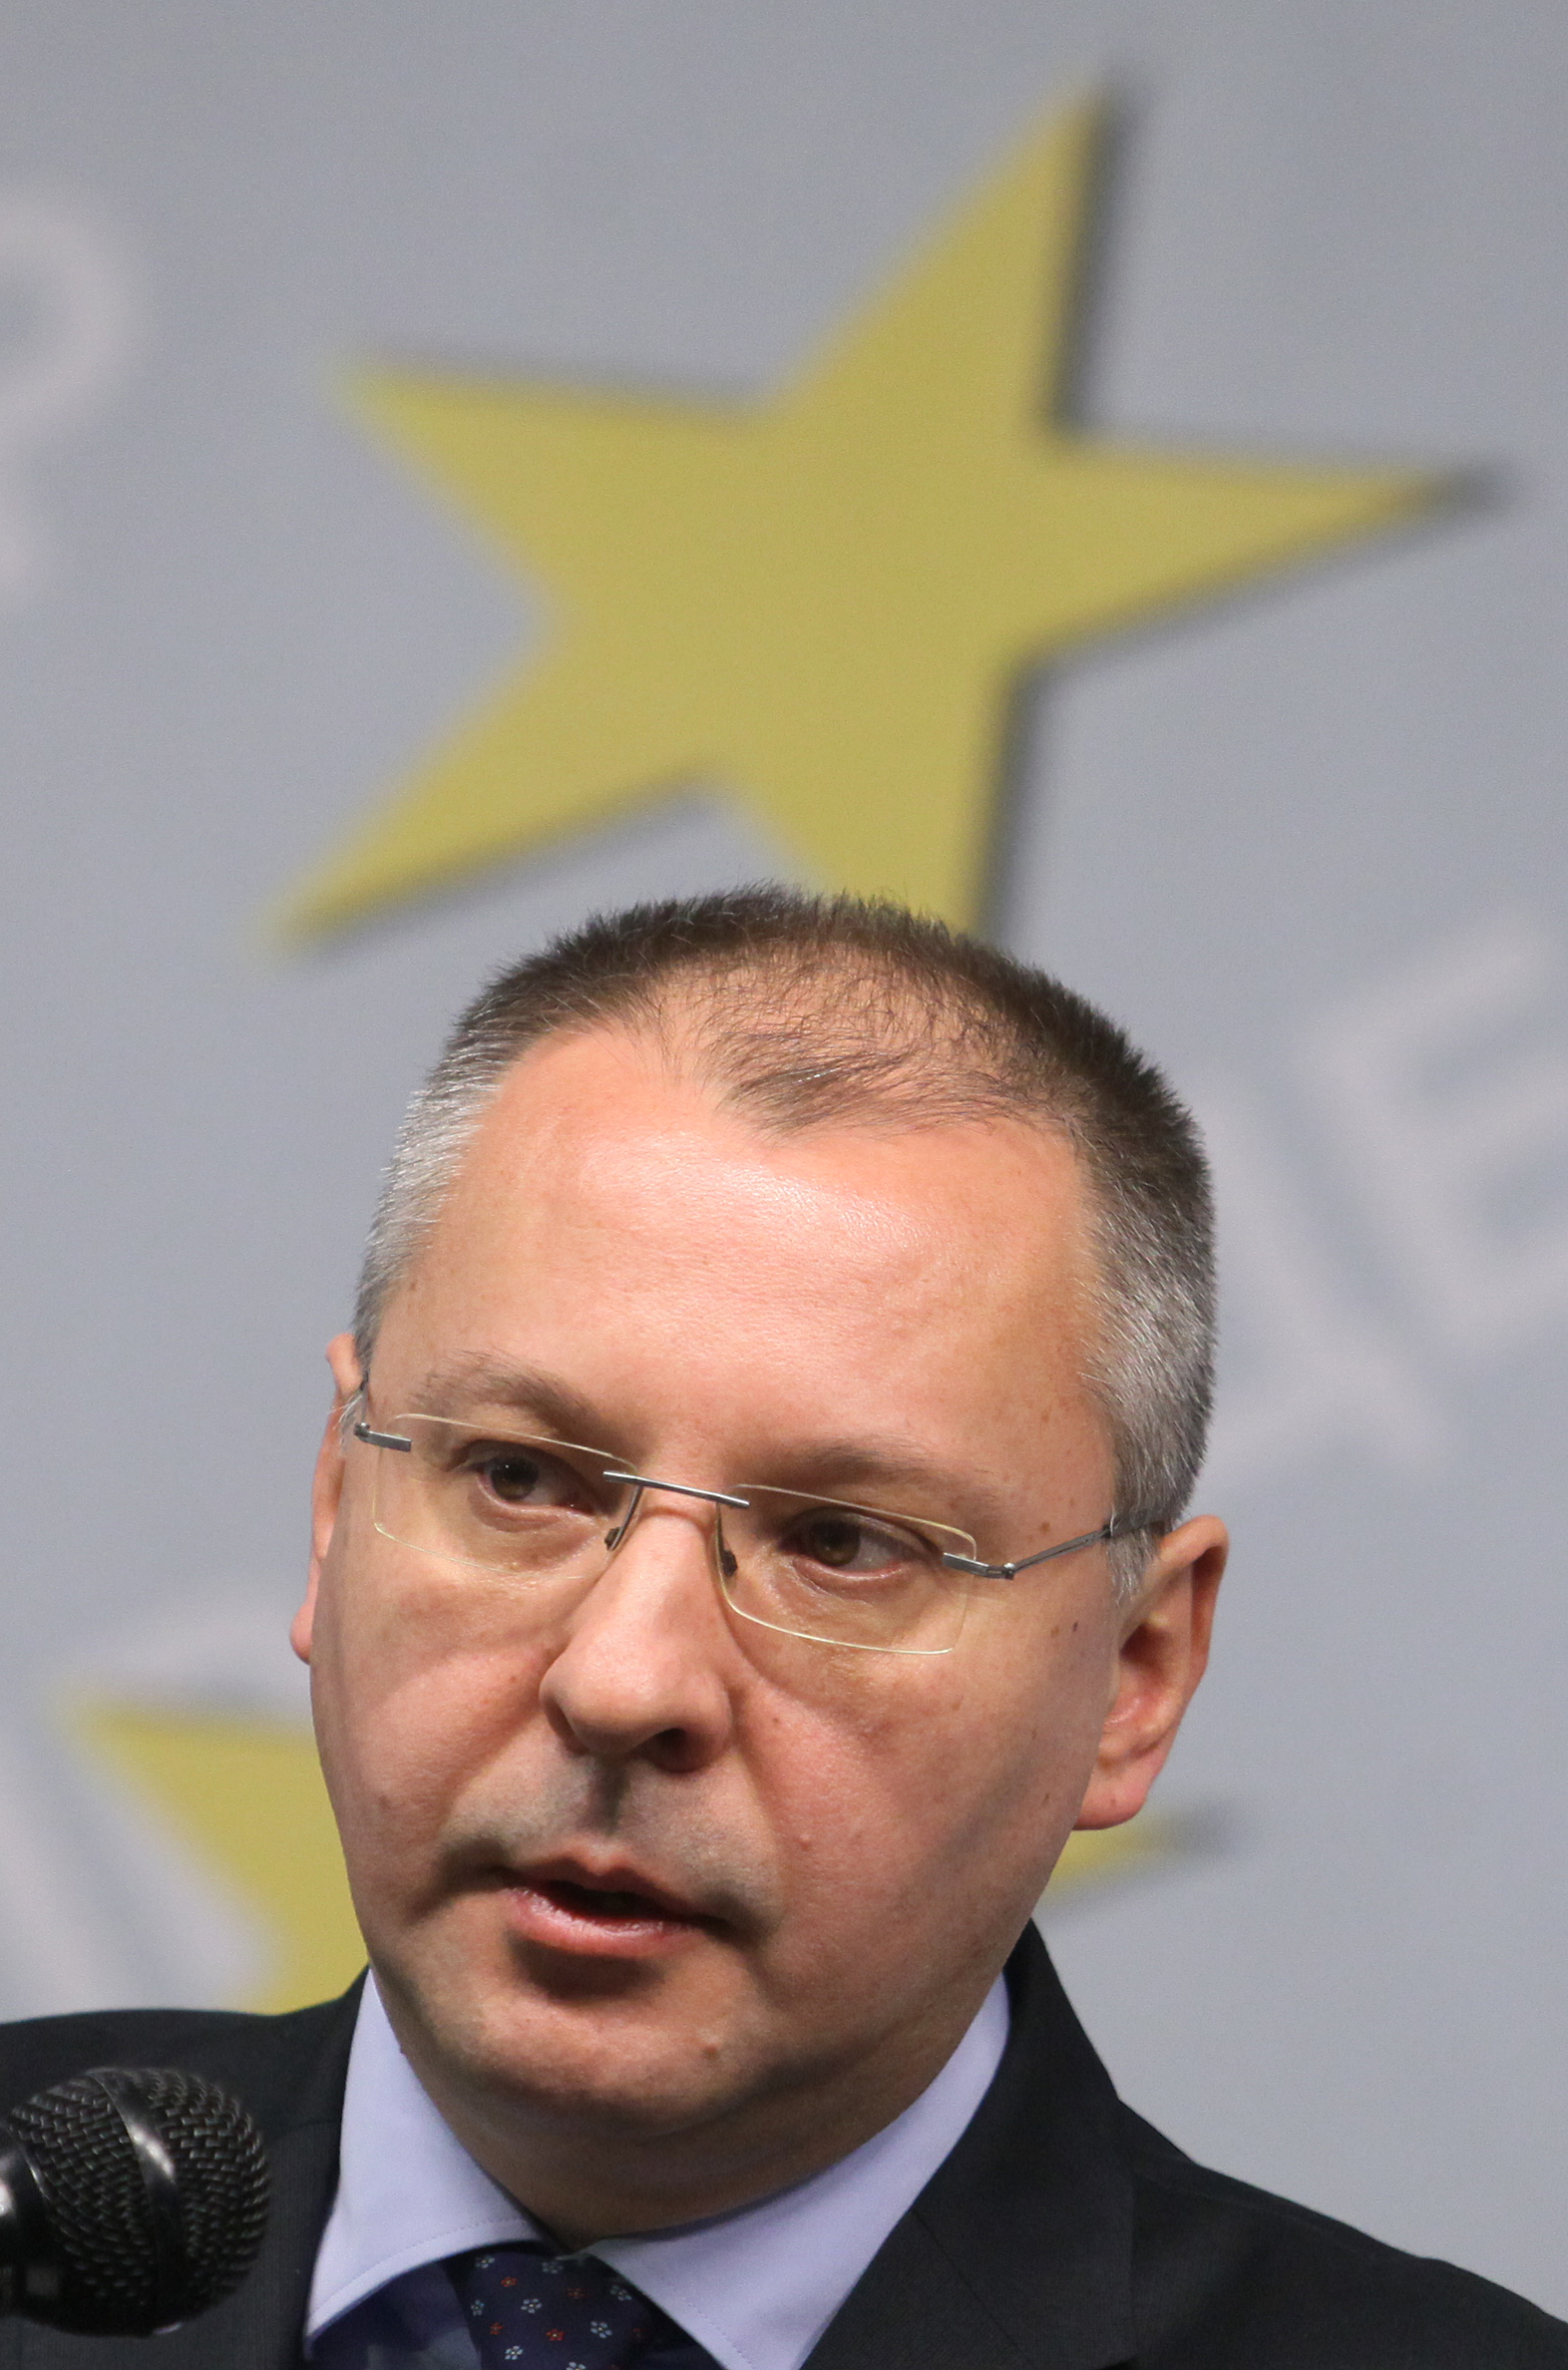 Станишев припомня, че вече е проверяван от Комисията по досиетата като кандидат - депутат за 41 НС